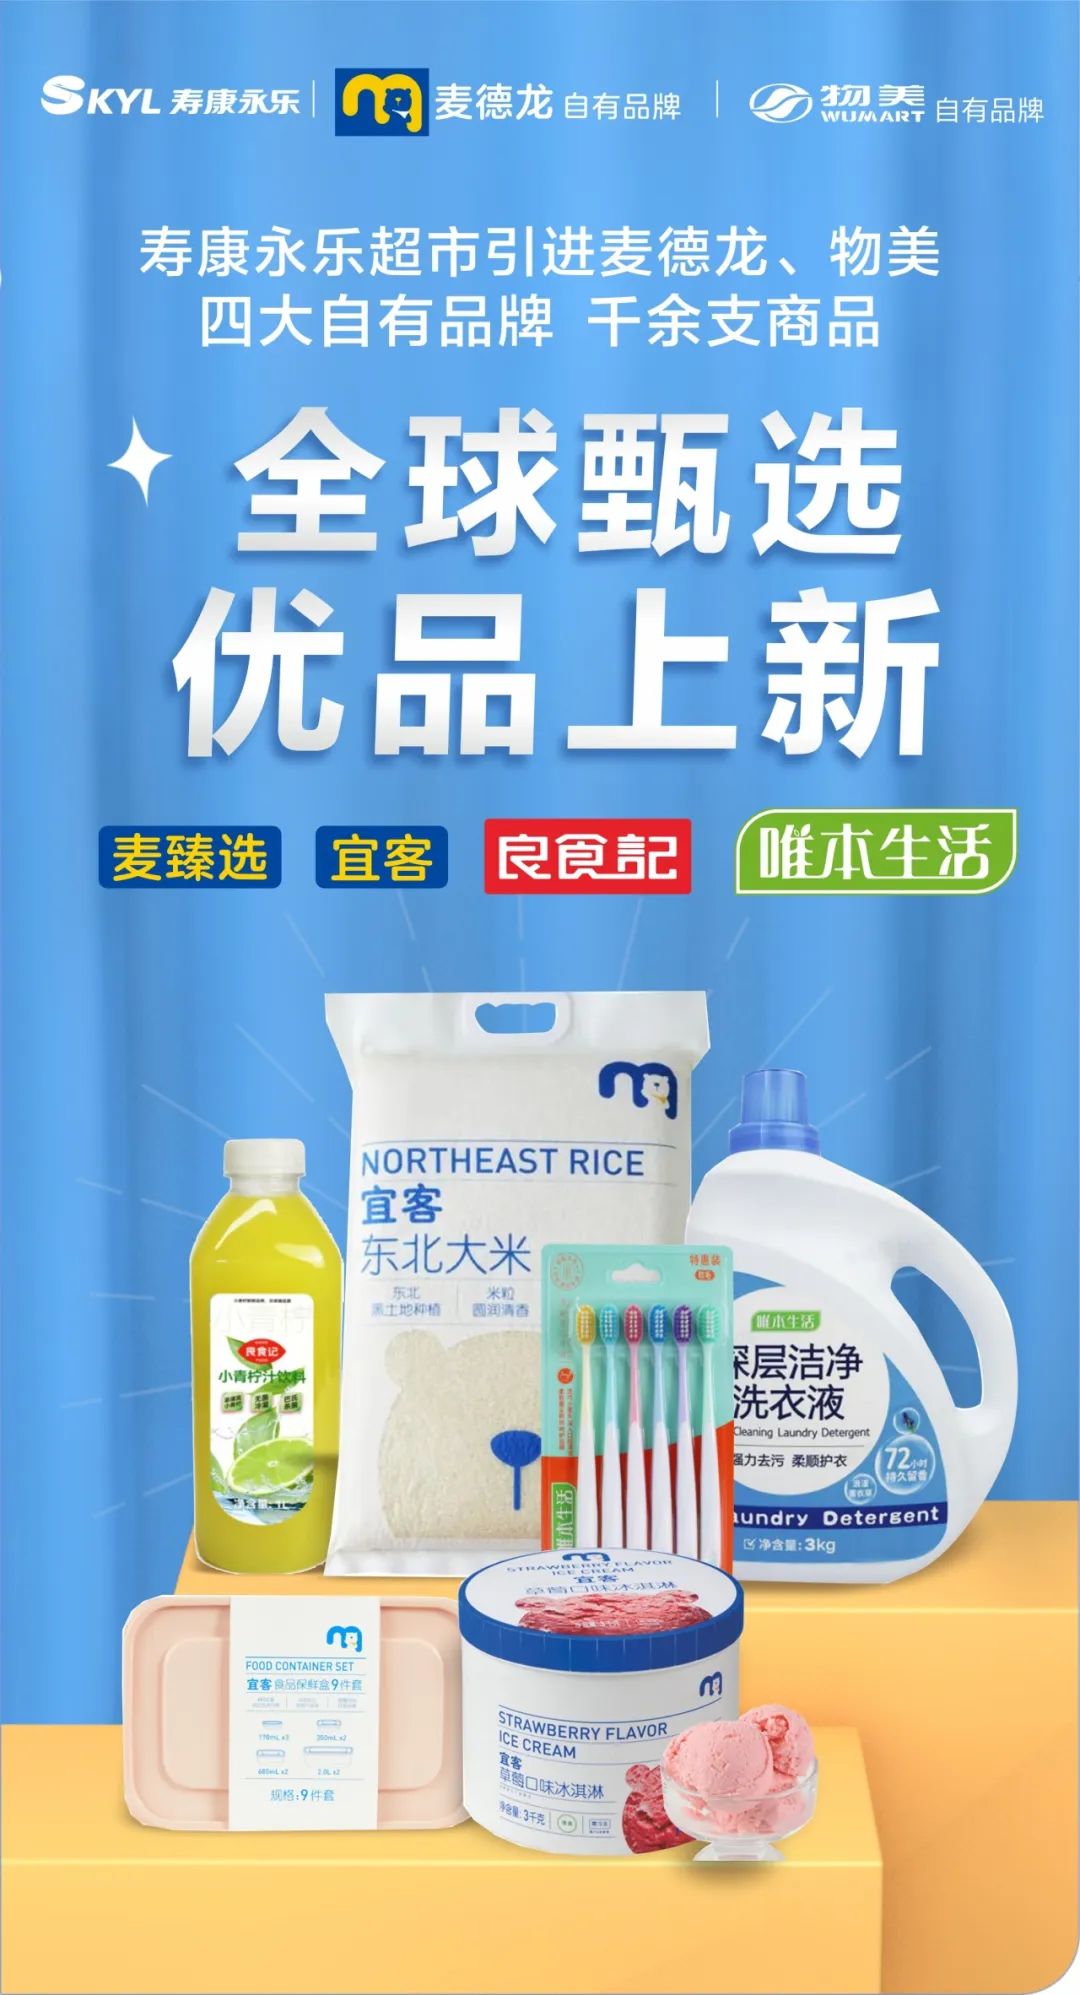 湖北寿康永乐超市引进麦德龙,物美四大自有品牌 千余支商品,全面上新!